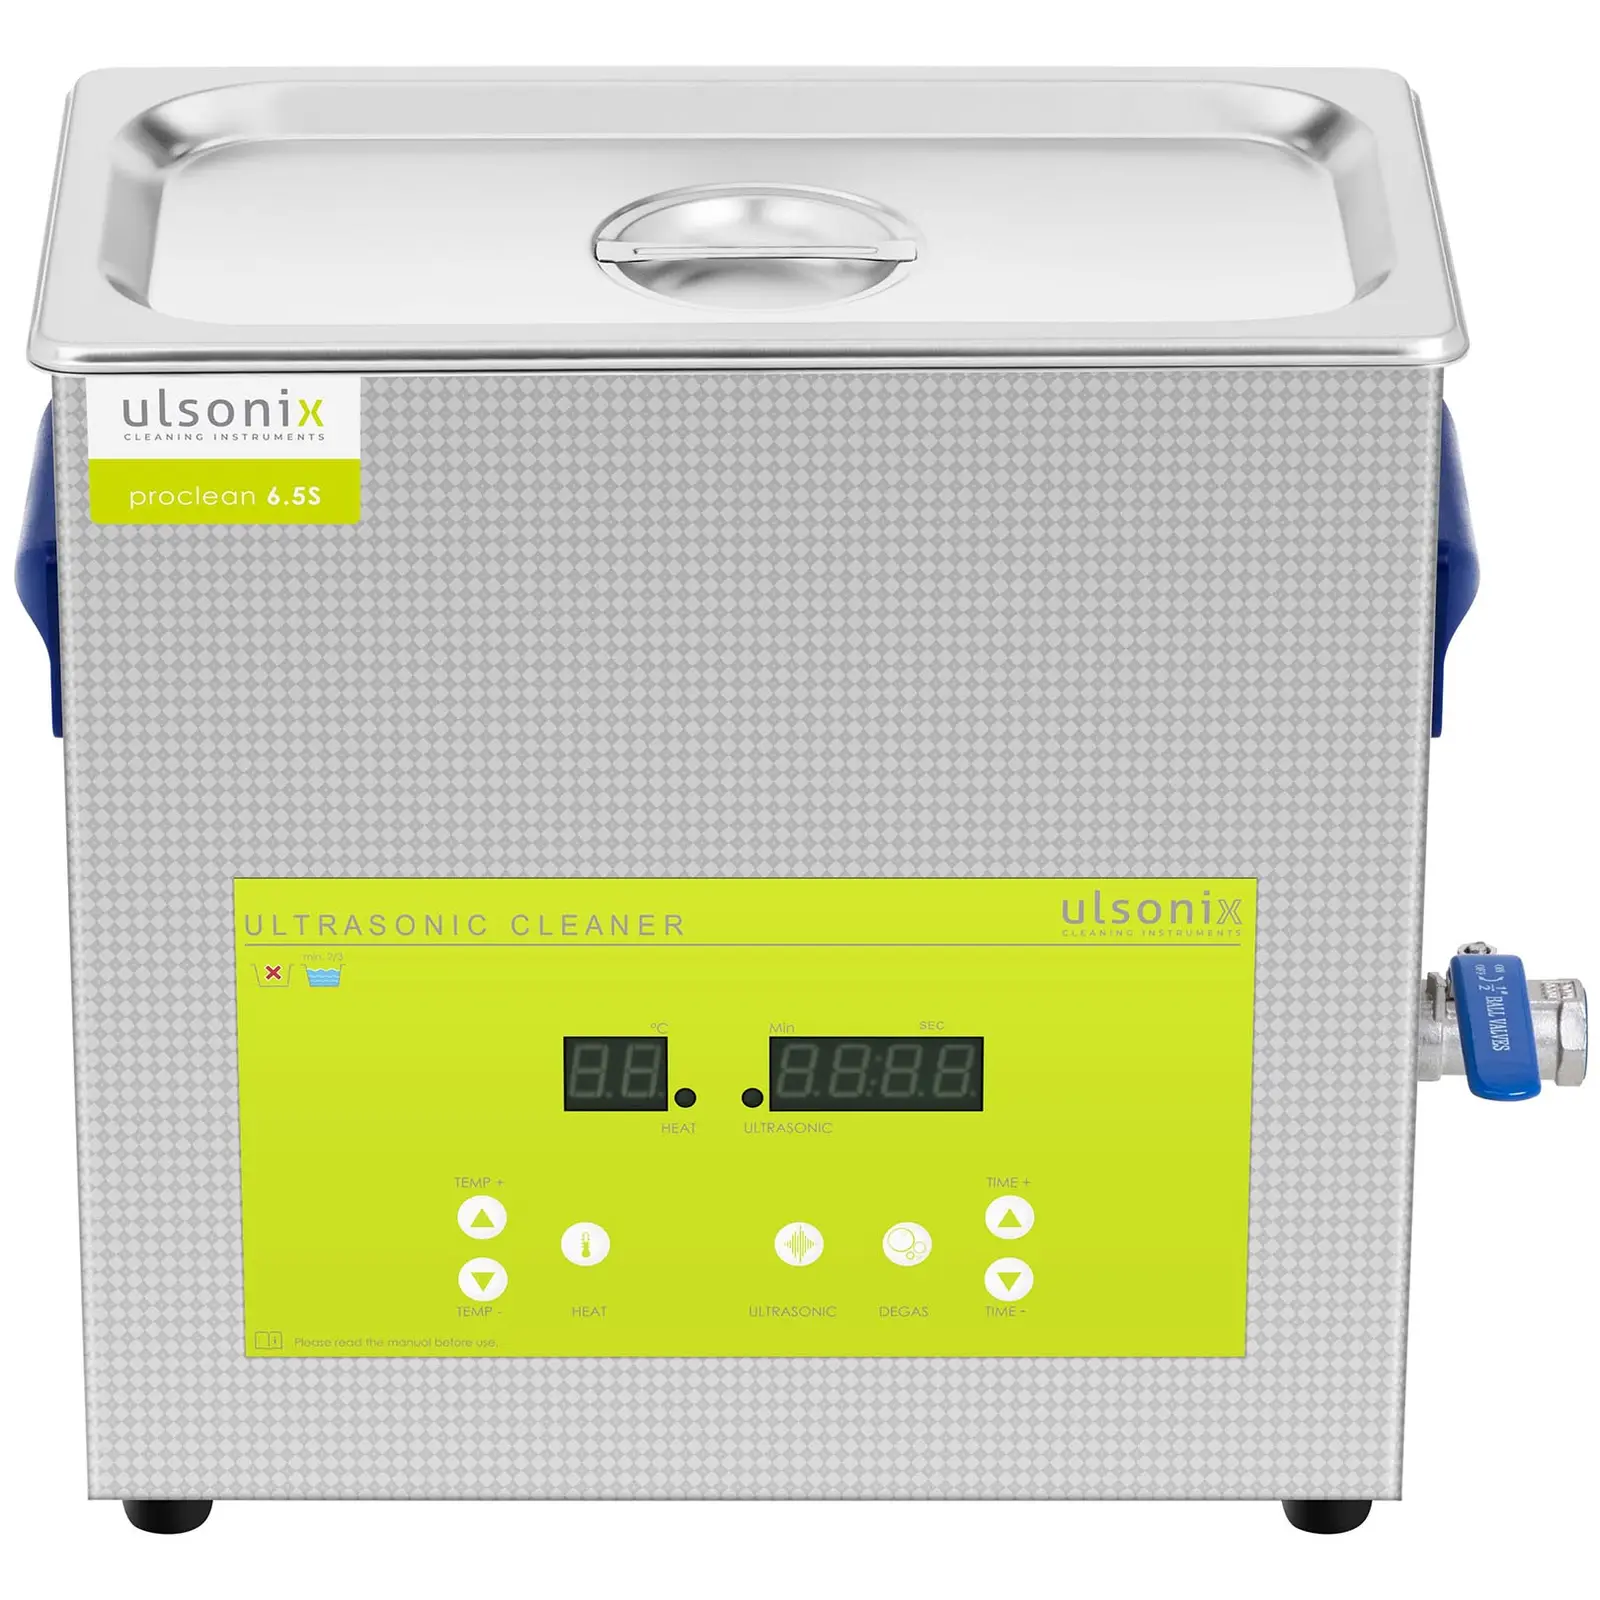 Ultrasonic Cleaner - degas - 6.5 L